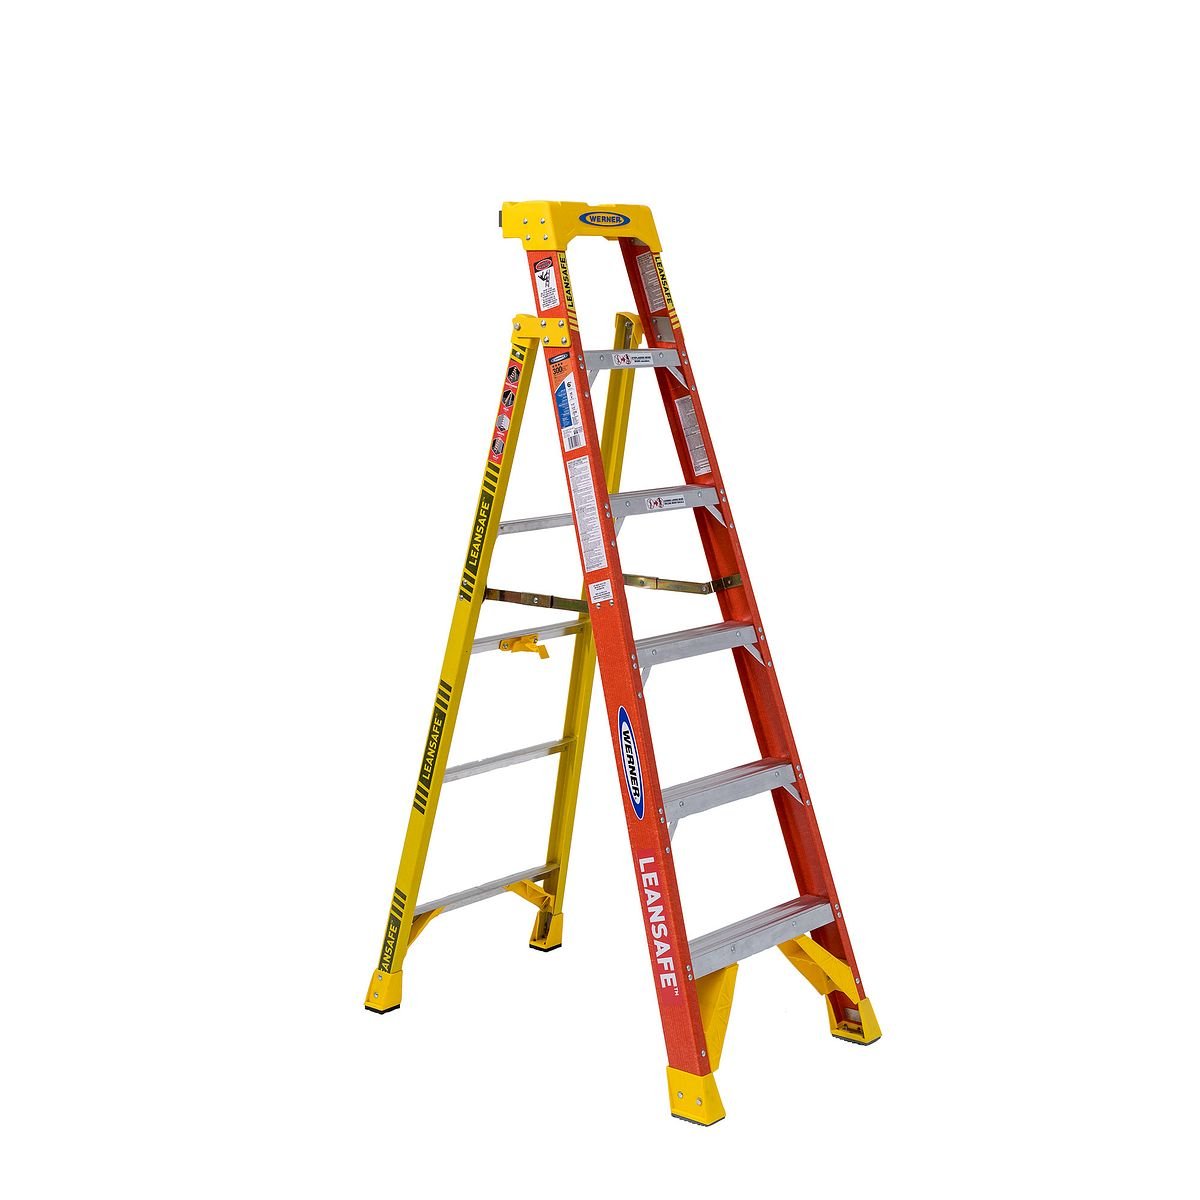 Distributor of Werner L6206 6 ft. Fiberglass Leaning Ladder in UAE